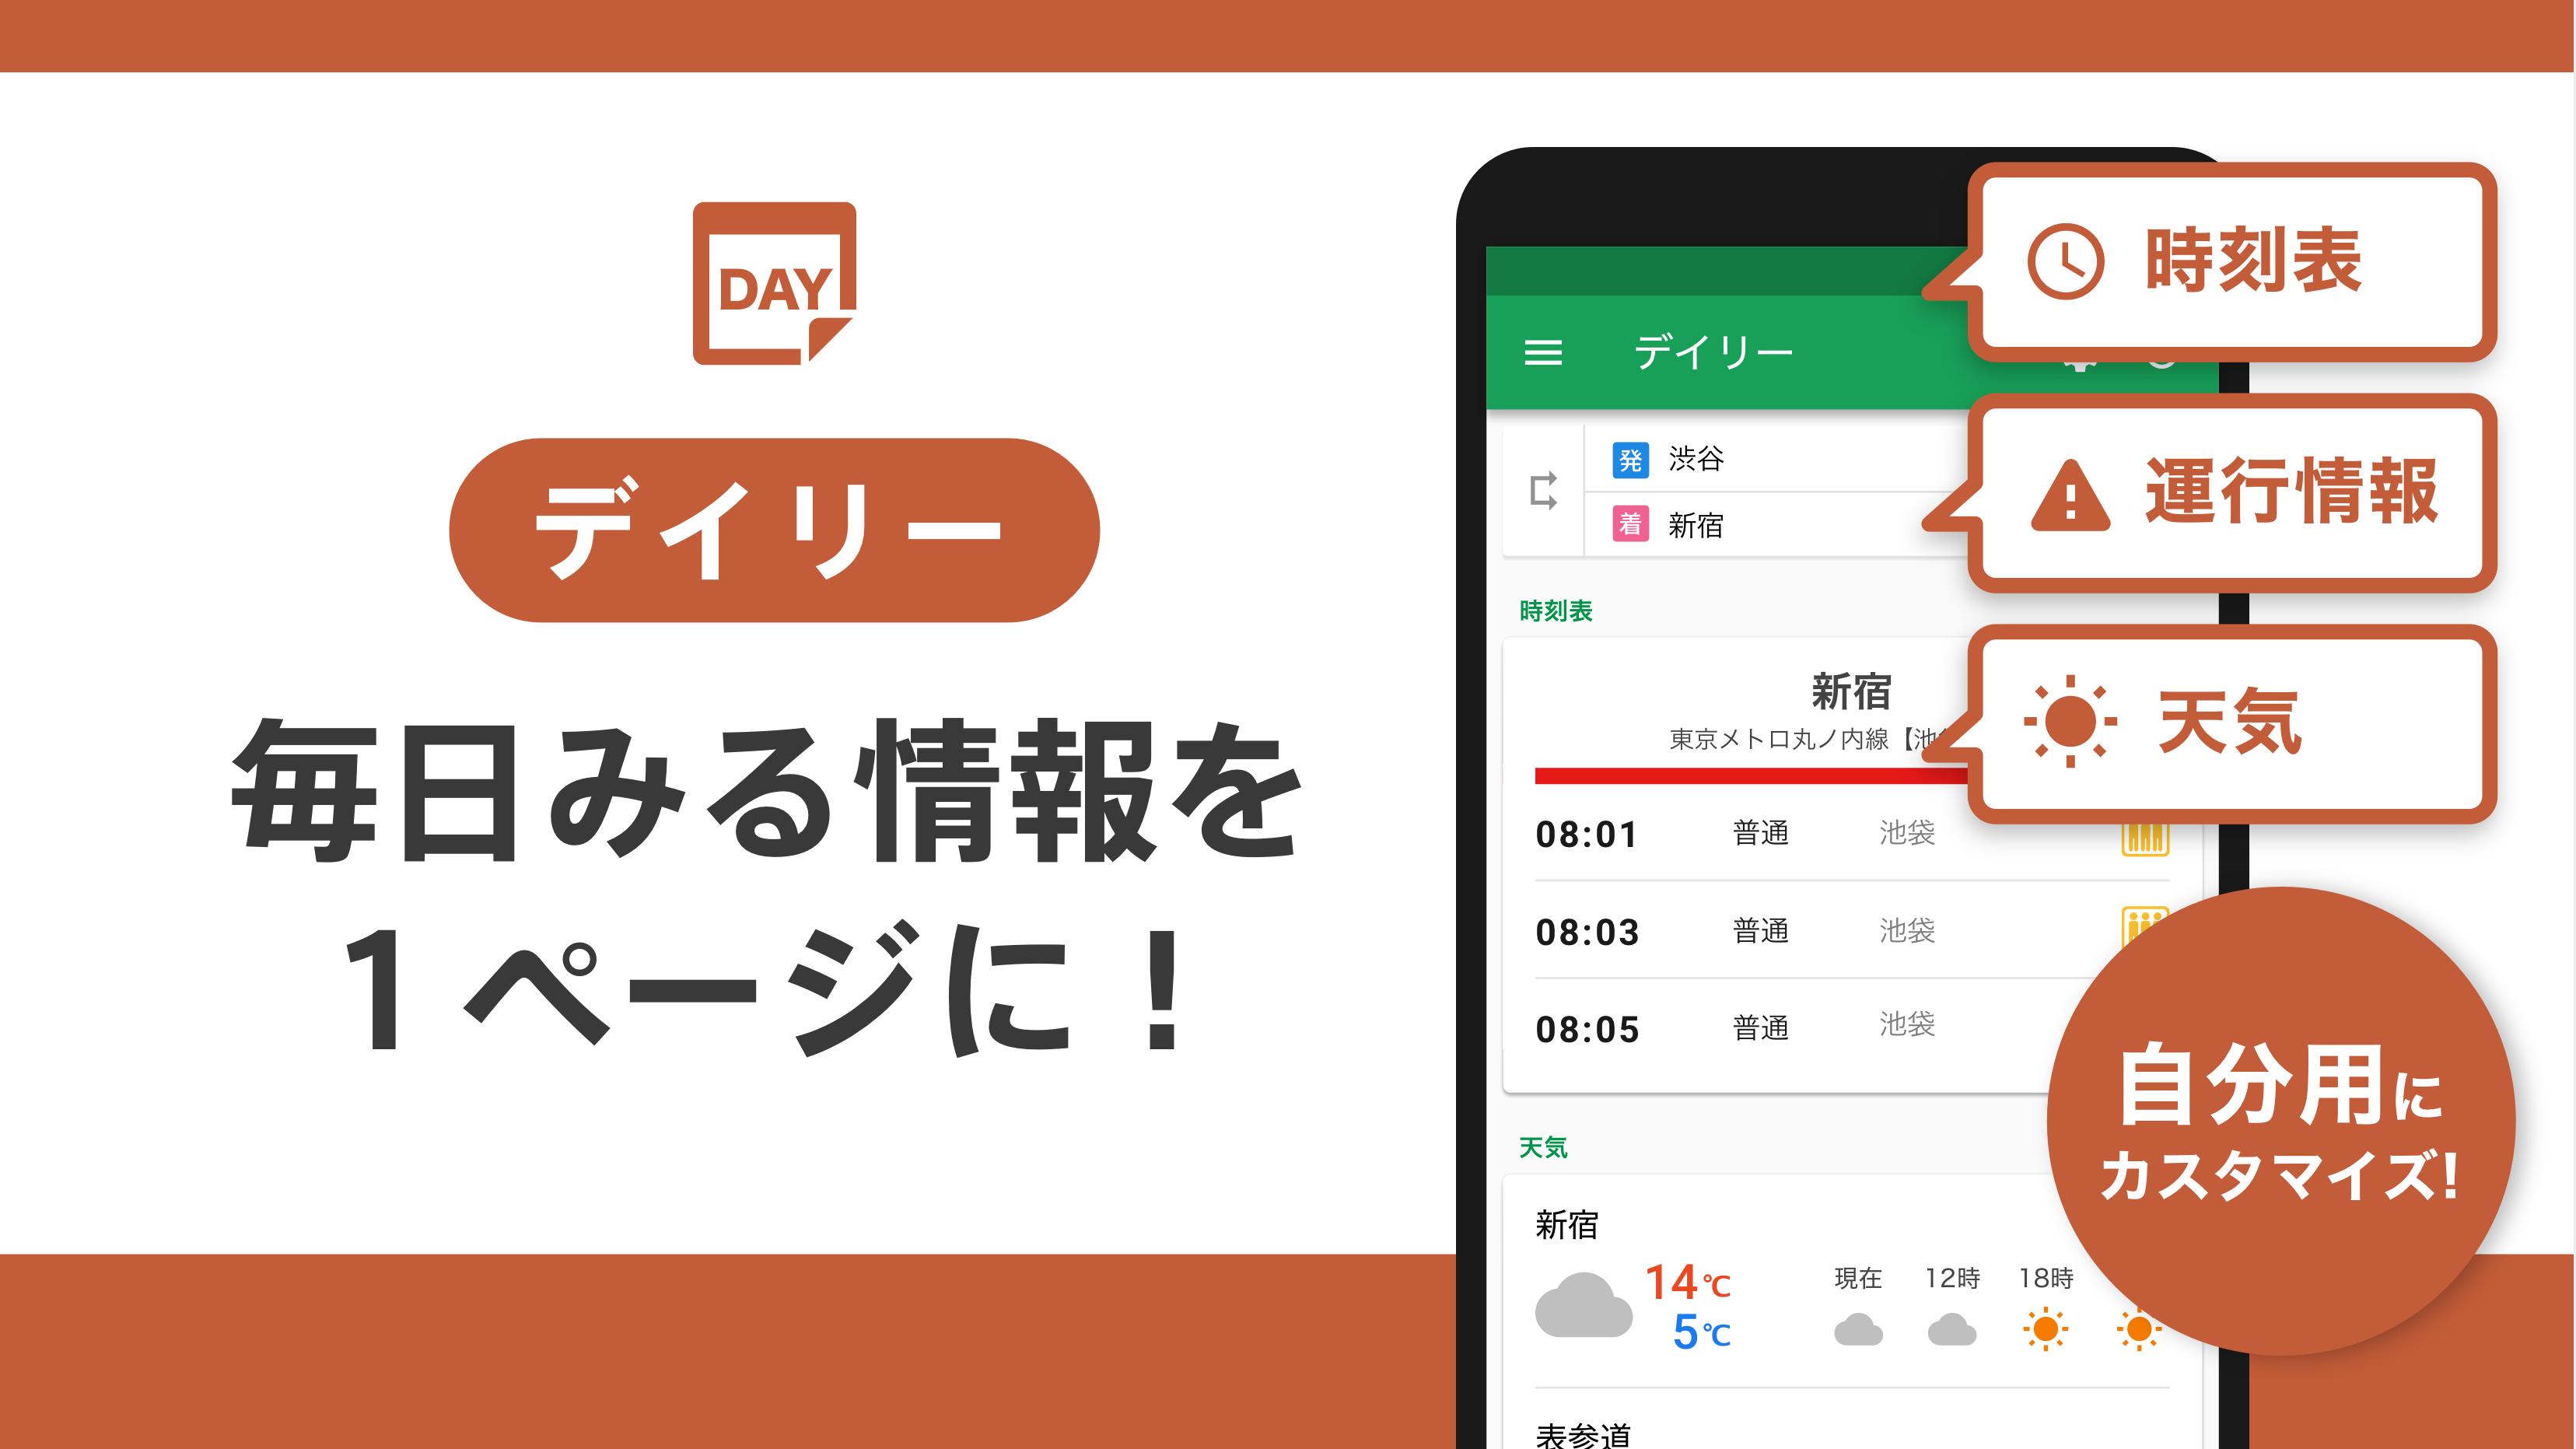 일본의 전철 환승 검색 앱 - 新幹線の切符、飛行機の航空券予約・格安検索、青春18きっぷにも対応